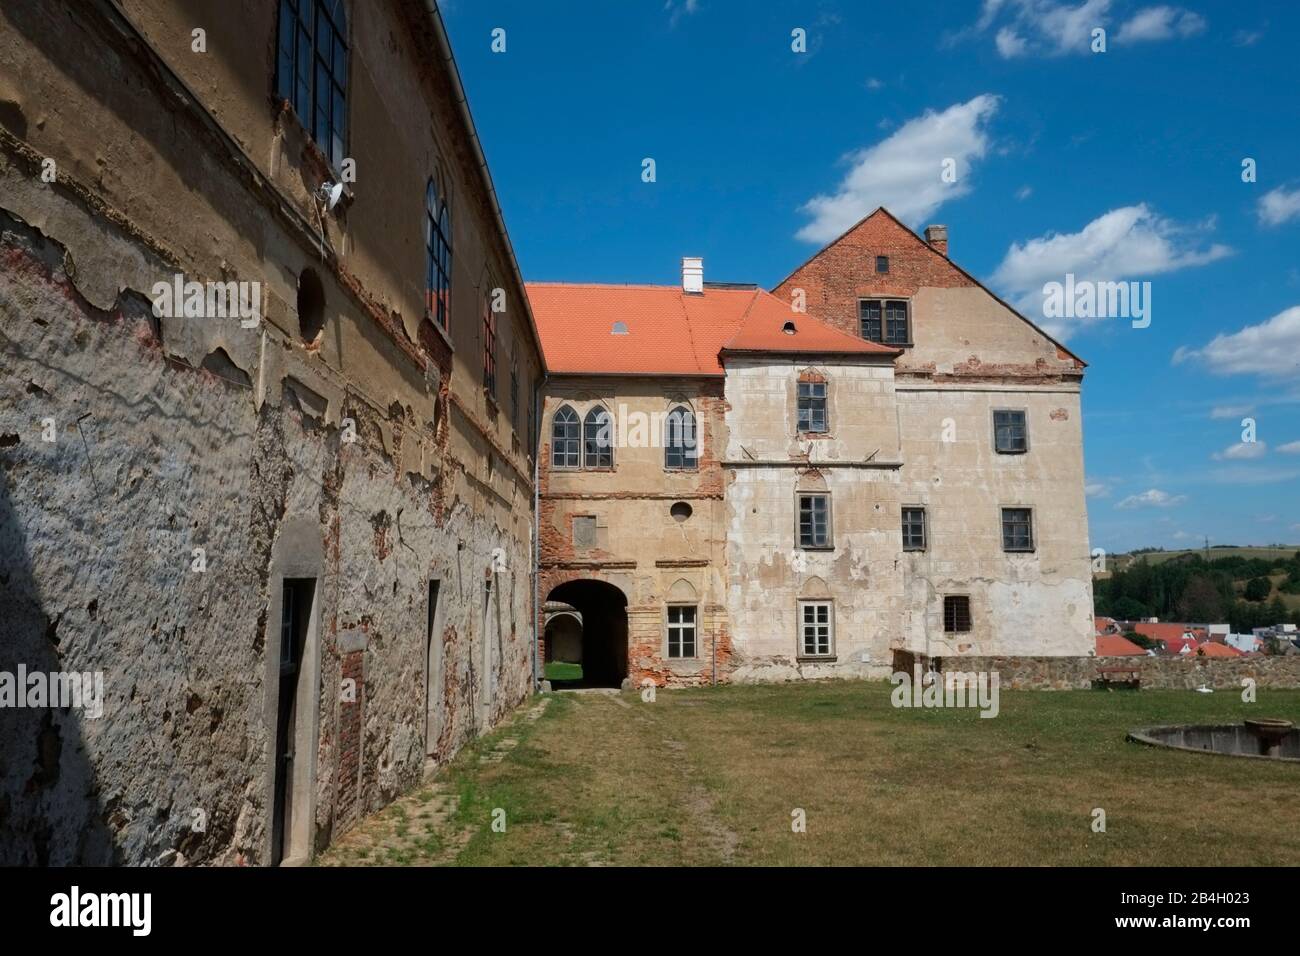 Schloss Brtnice, 1945 von den Besitzern durch sogenannte Benes-Dekrete konfisziert, ist diese Gotische Burg in baufälligem Zustand ohne Reparatur, Tschechien Stockfoto